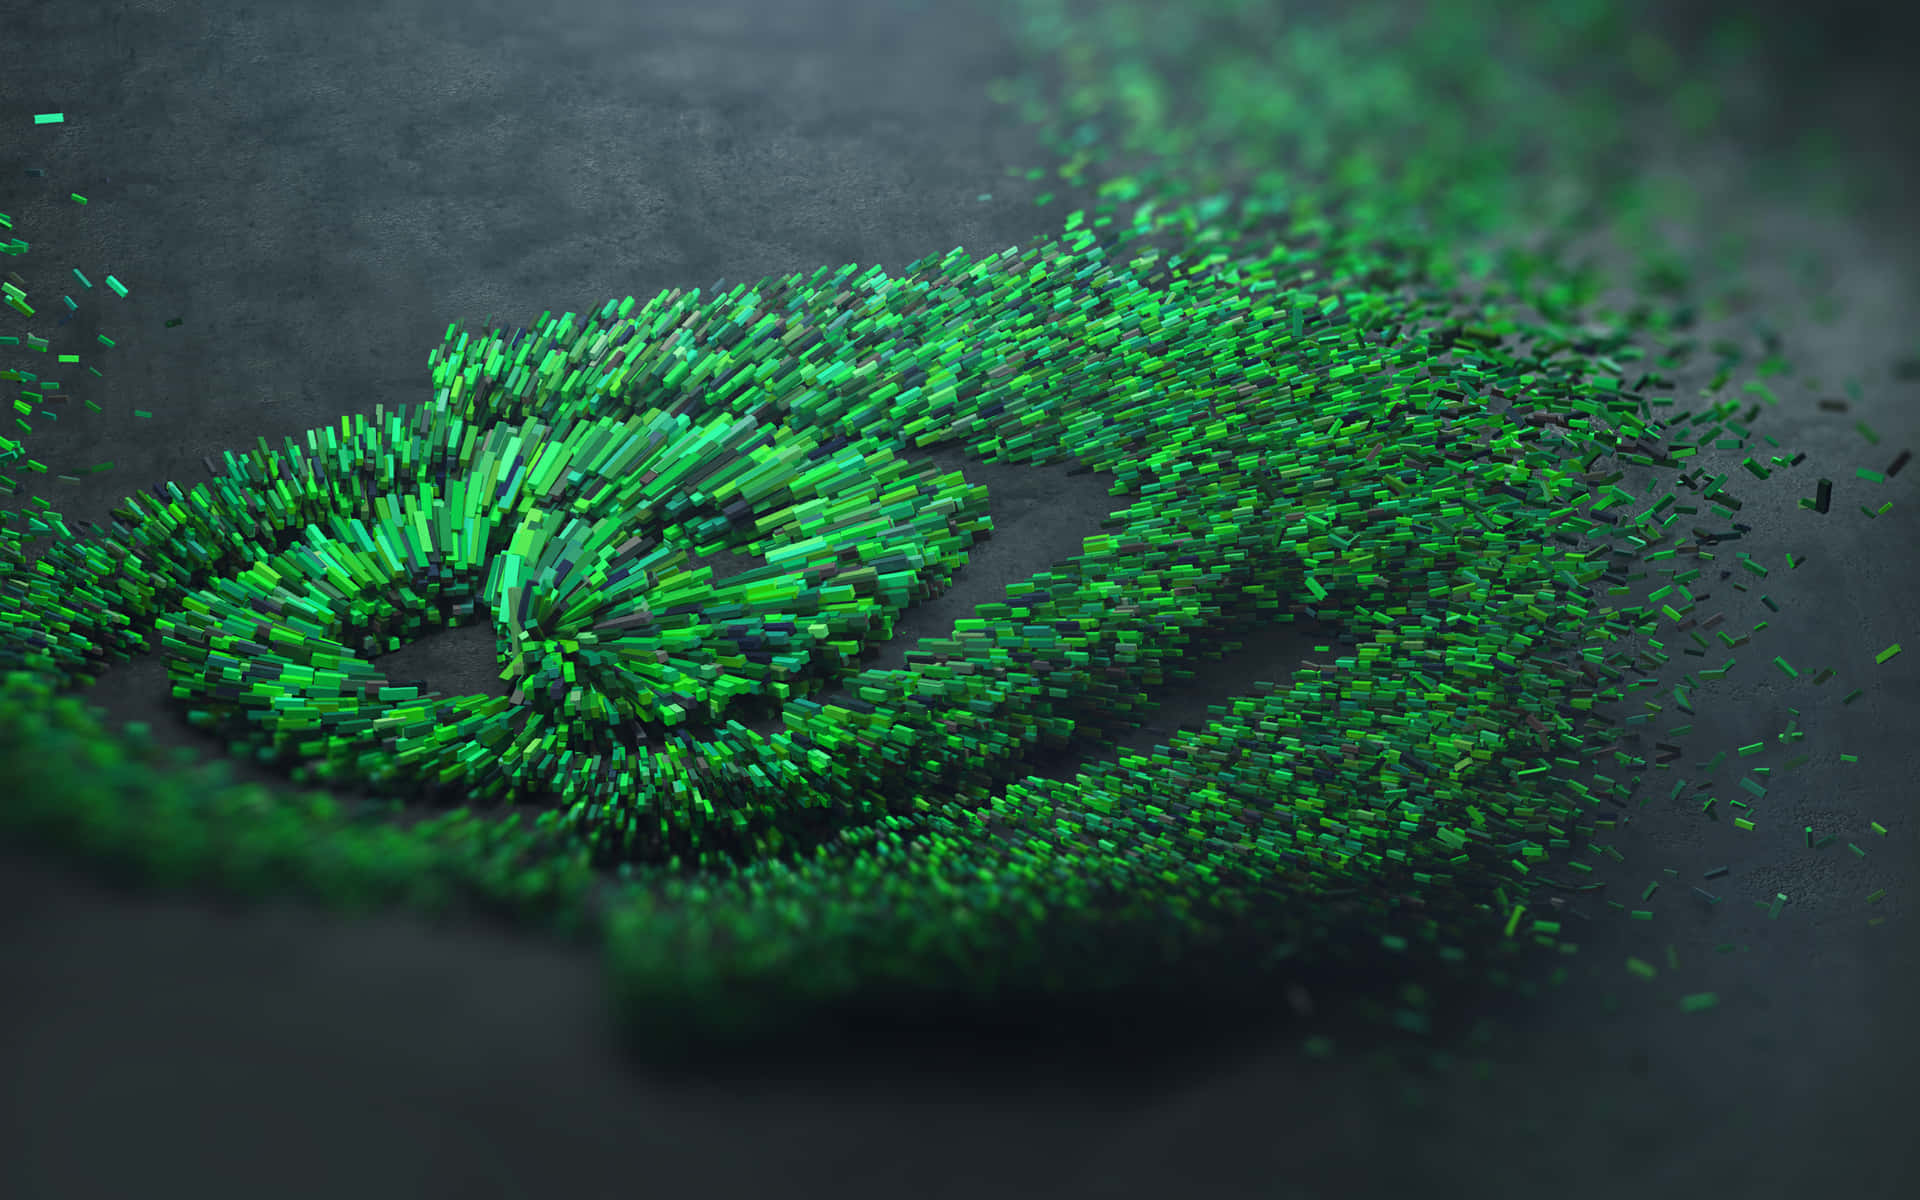 Eingrünes Nvidia-logo, Bestehend Aus Grünen Blättern, Ist Erstellt Worden.